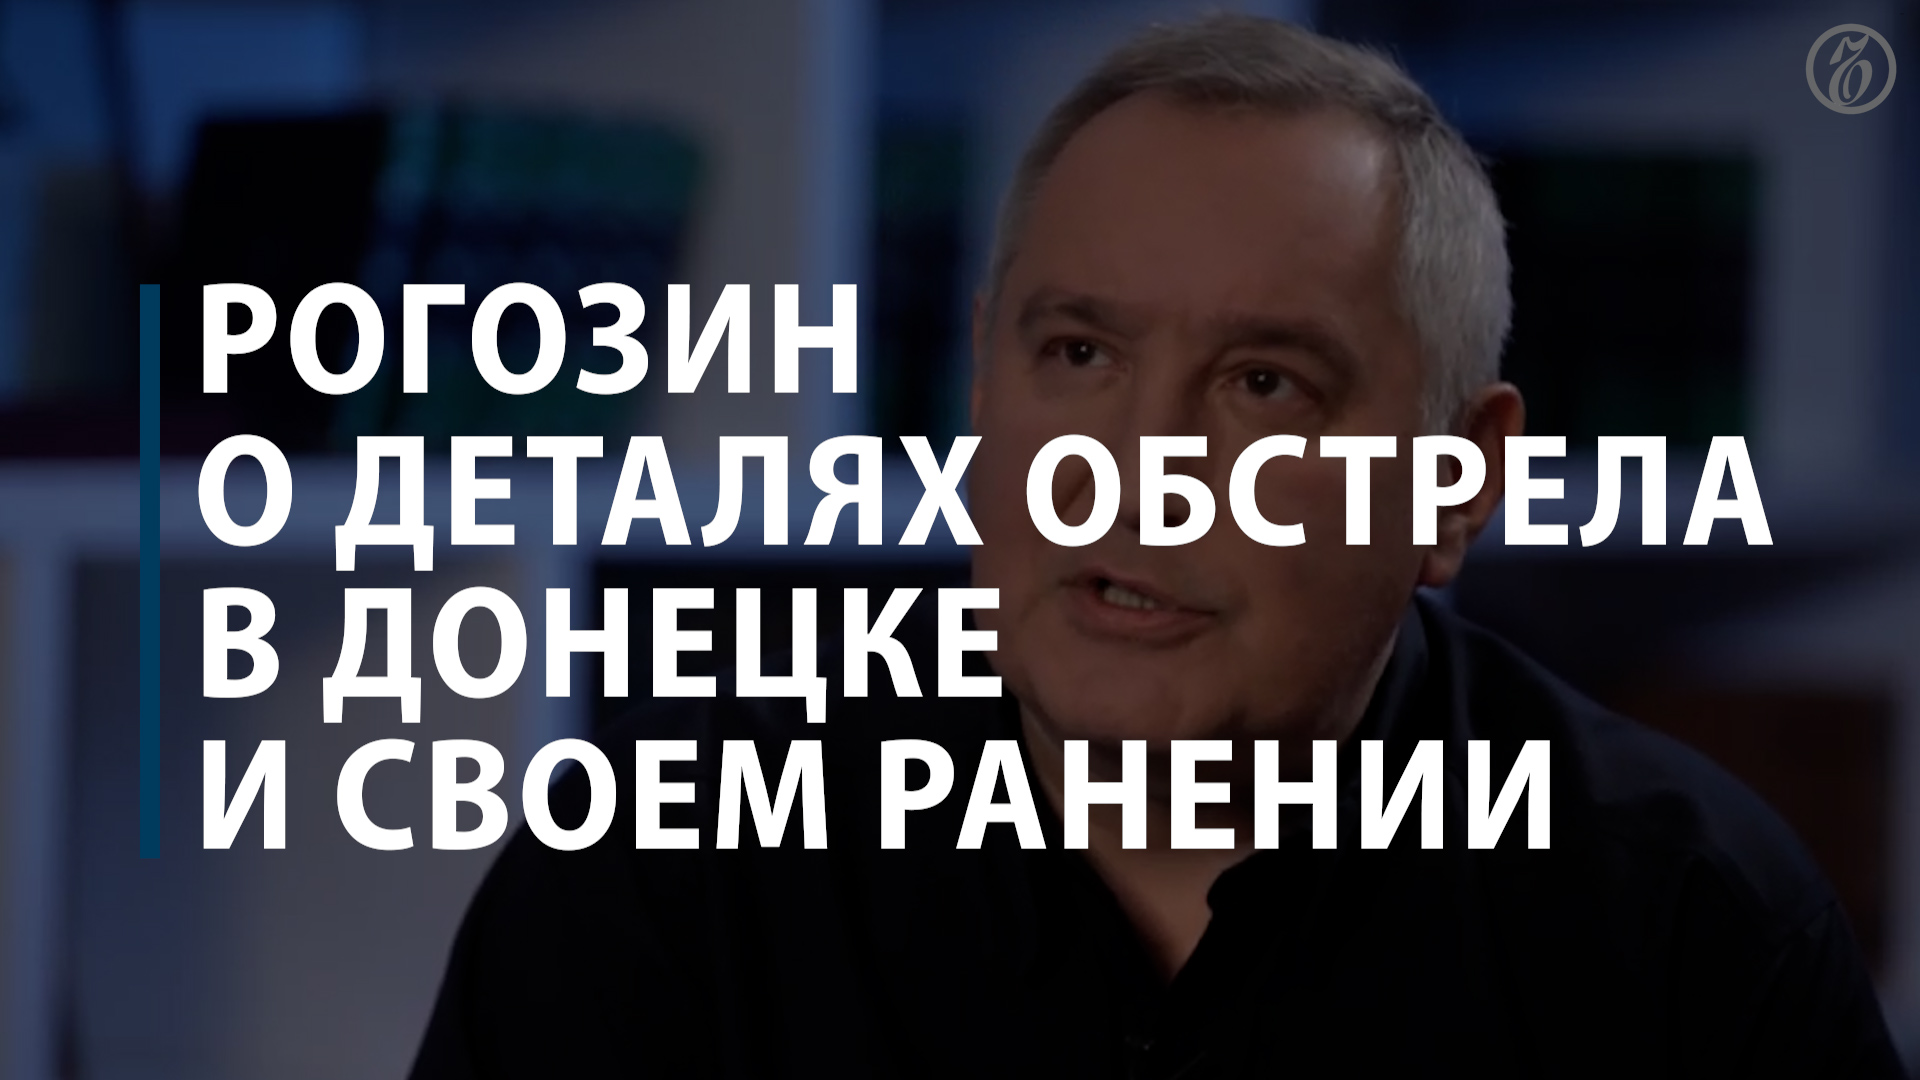 Рогозин о деталях обстрела в Донецке и своем ранении